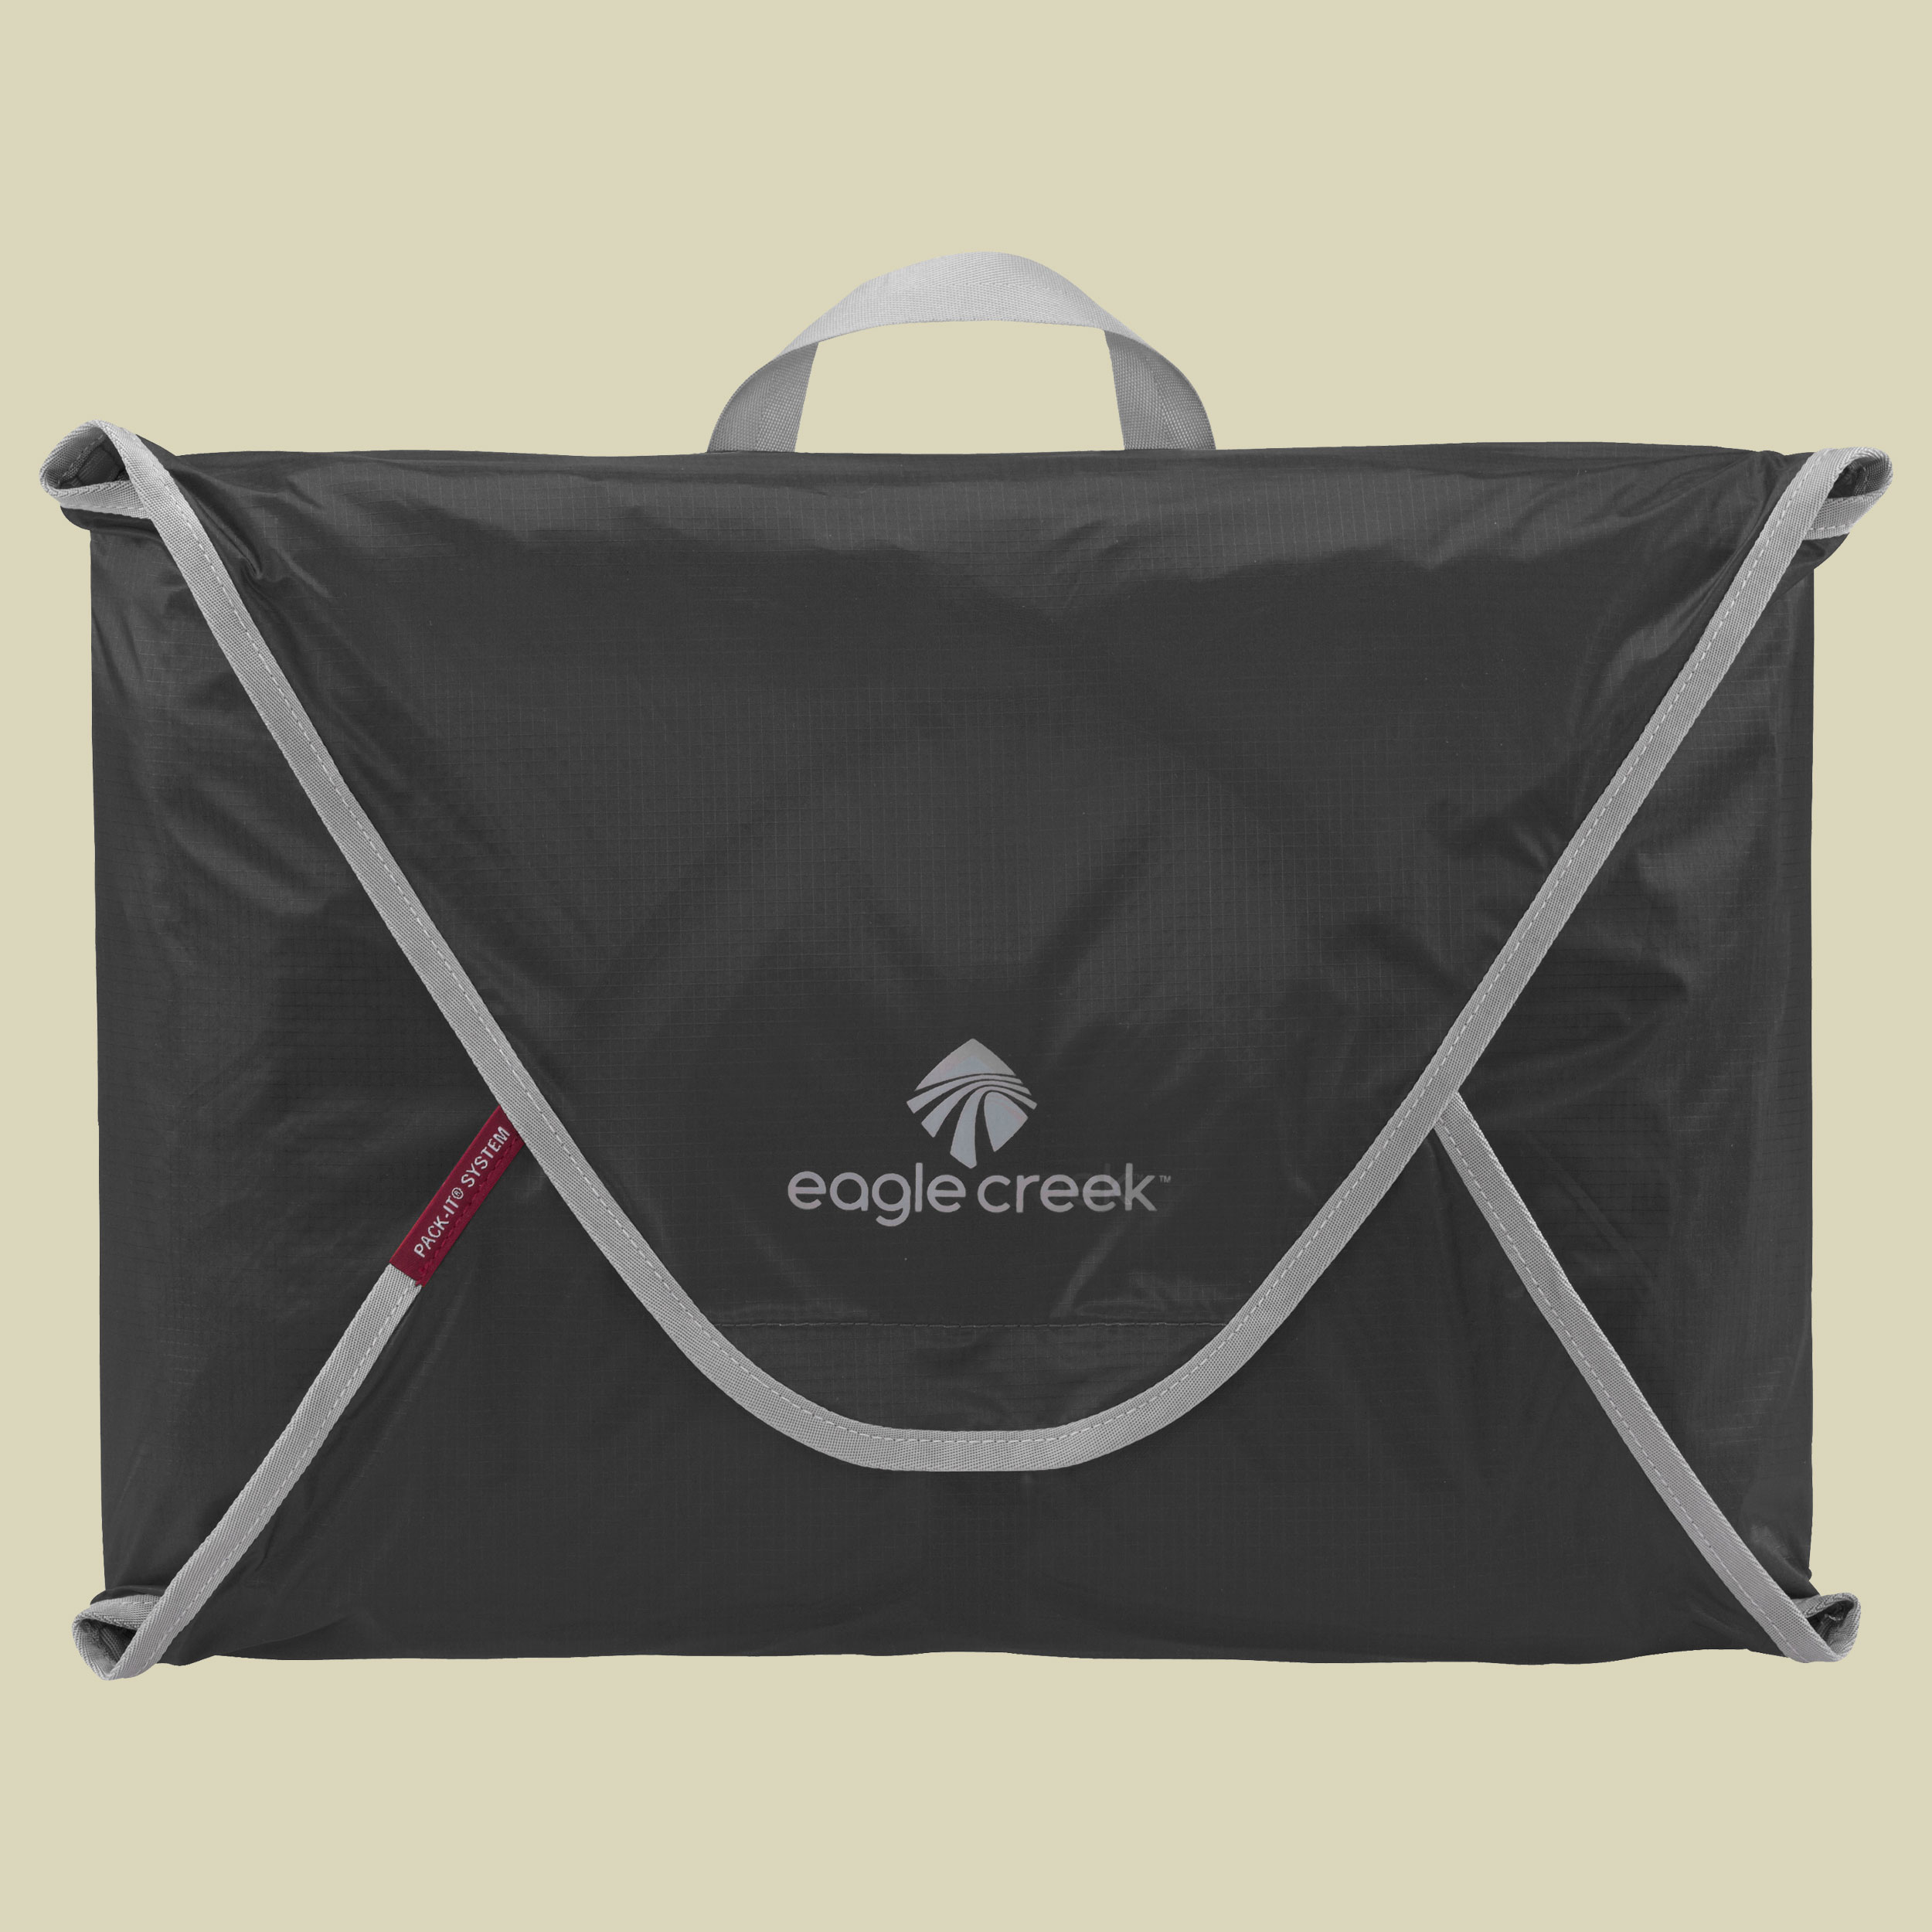 Pack-It Specter Garment Folder Größe medium Farbe ebony